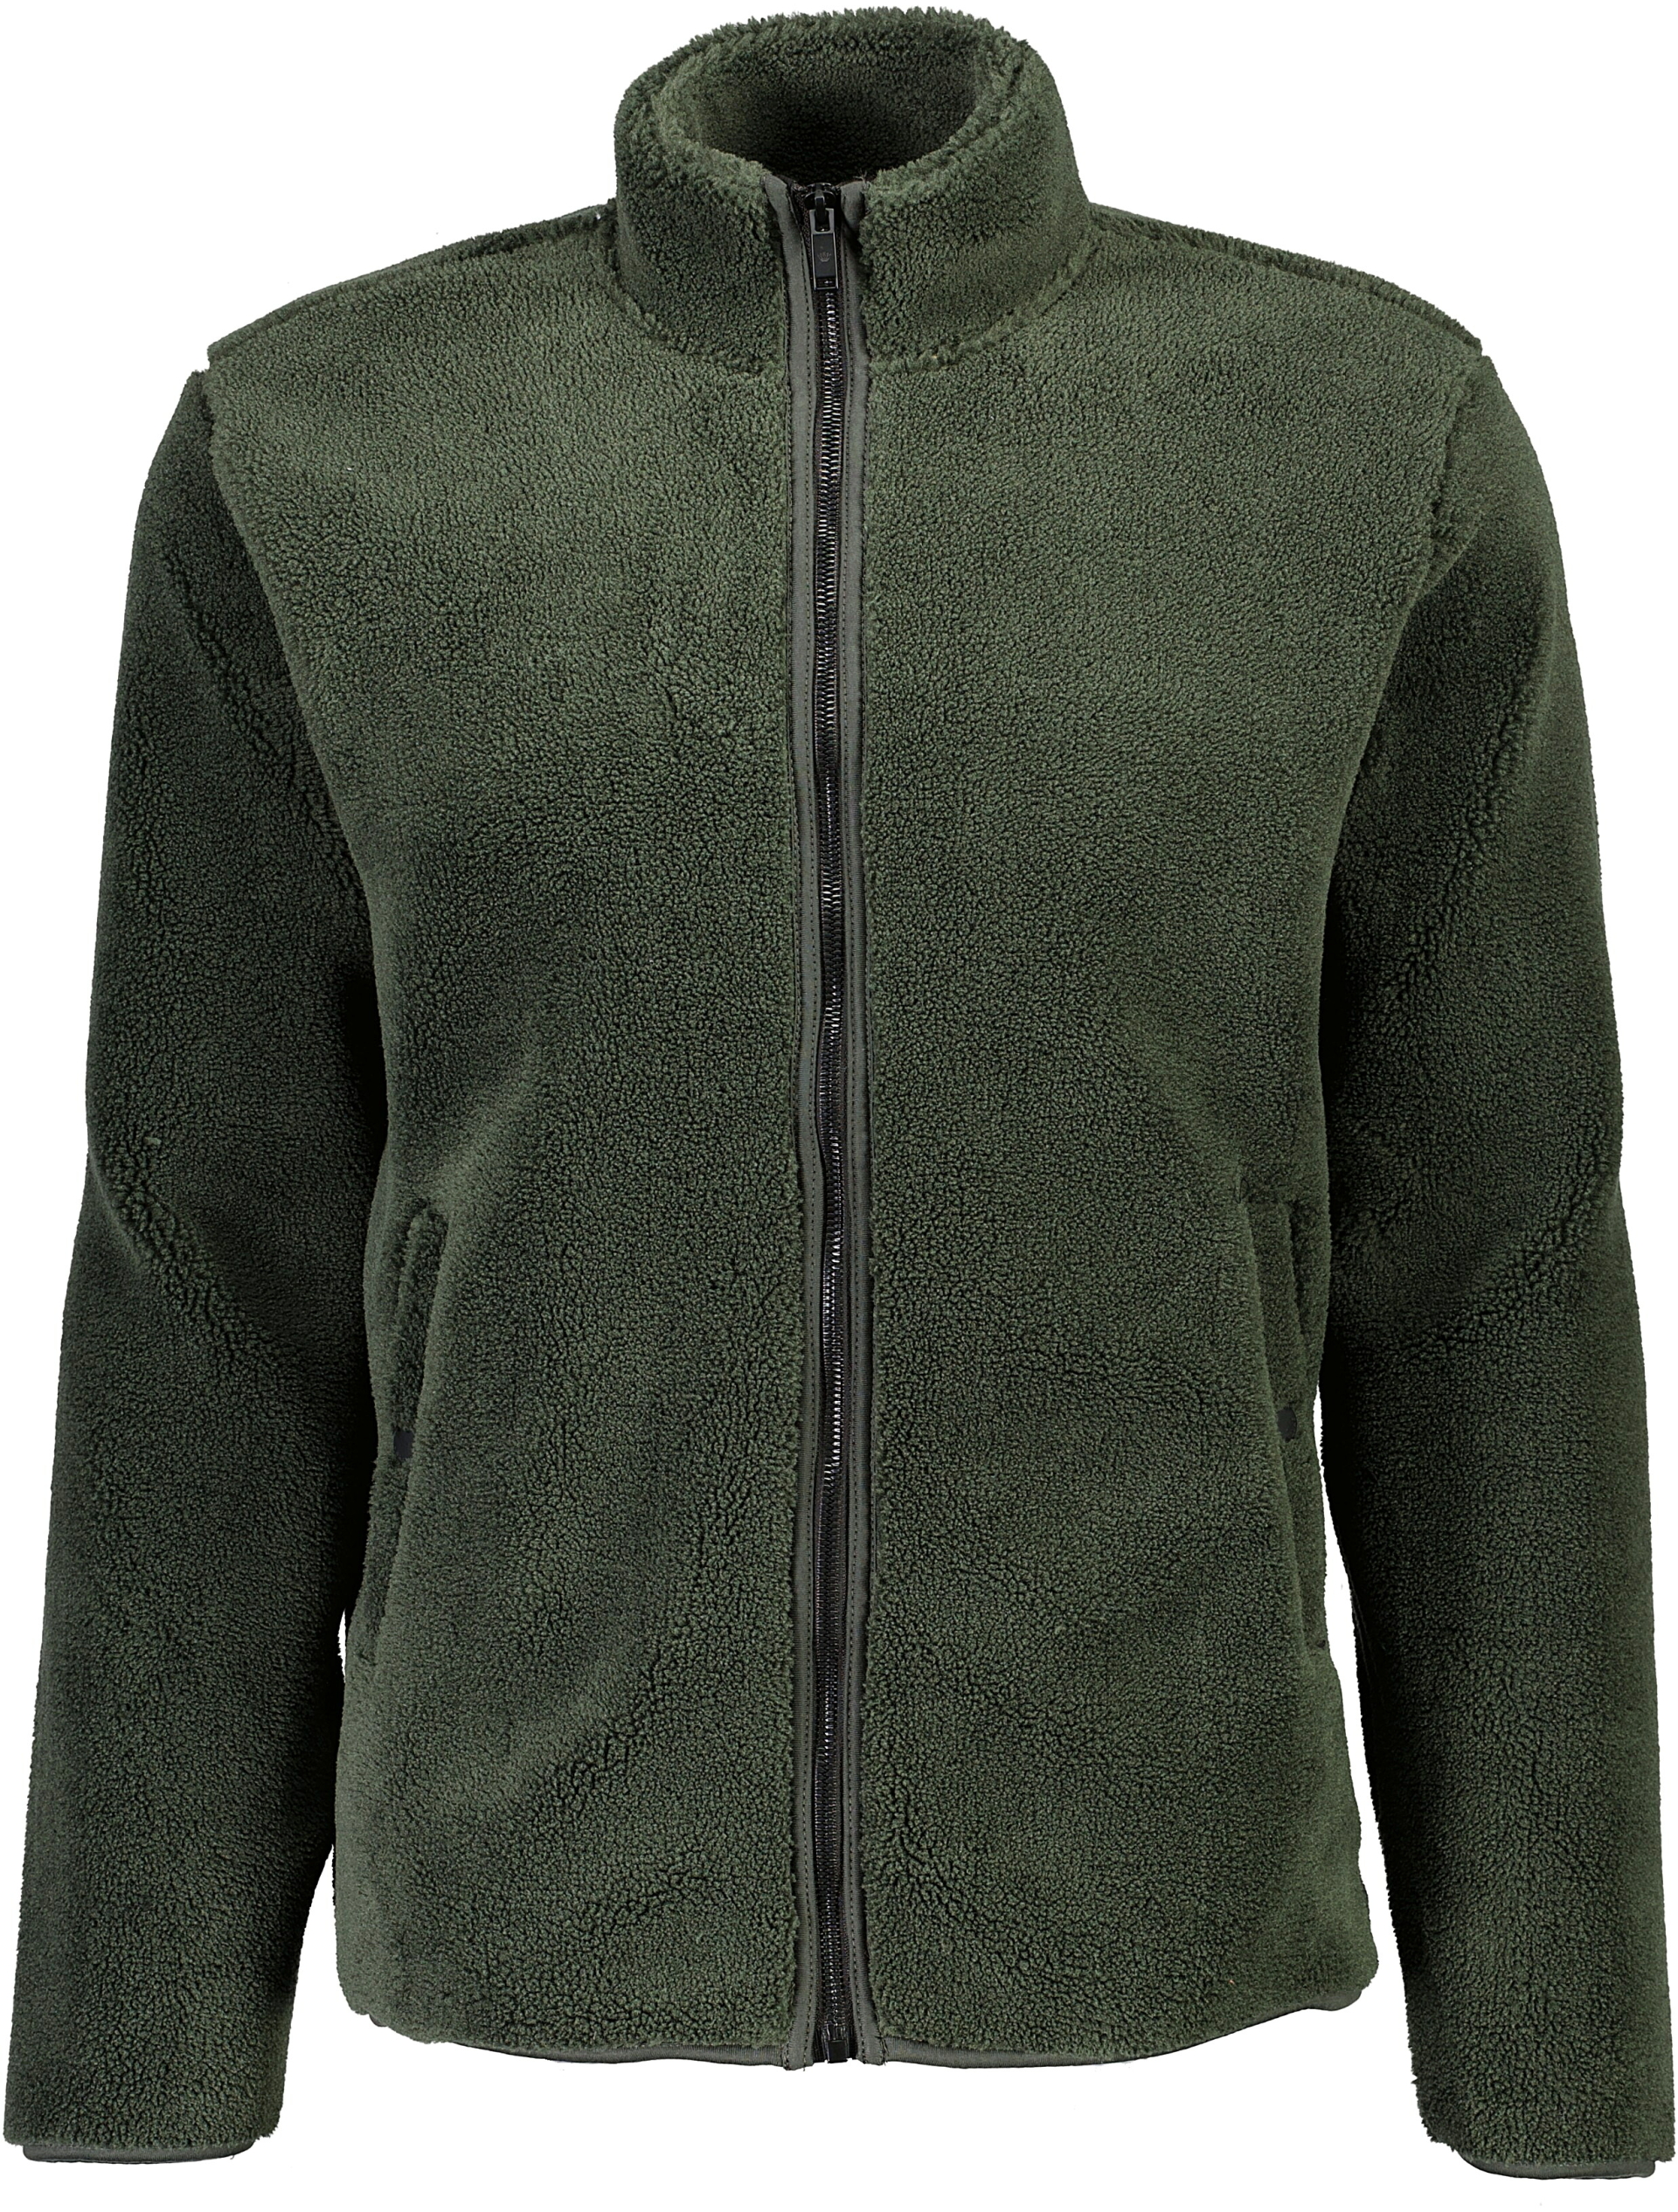 Junk de Luxe Casual jakke grøn / army